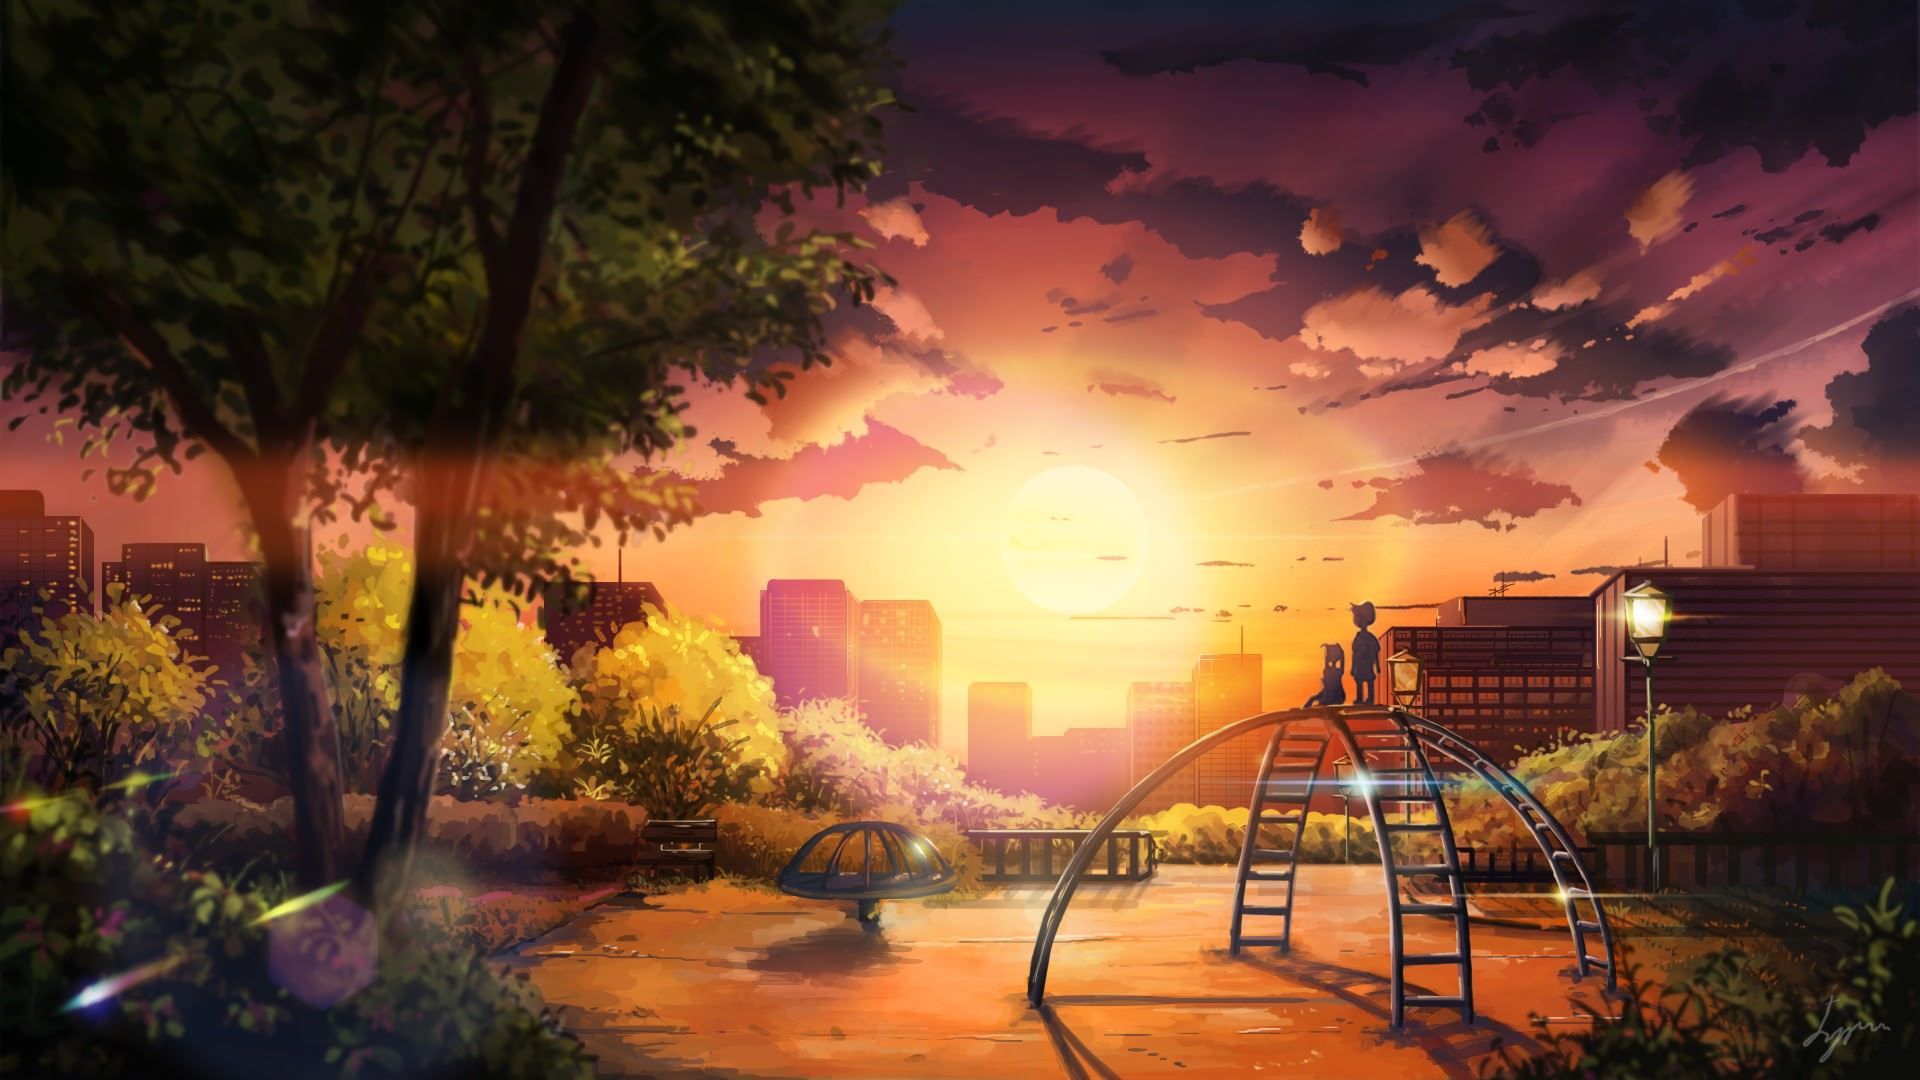 Bạn yêu thích thế giới Anime và công viên? Chúng tôi có một bộ ảnh hình nền Anime công viên đầy màu sắc và đắm say cho bạn. Hãy cùng khám phá những con người, cảnh đẹp và những khoảnh khắc đáng nhớ của Anime Park Wallpapers.